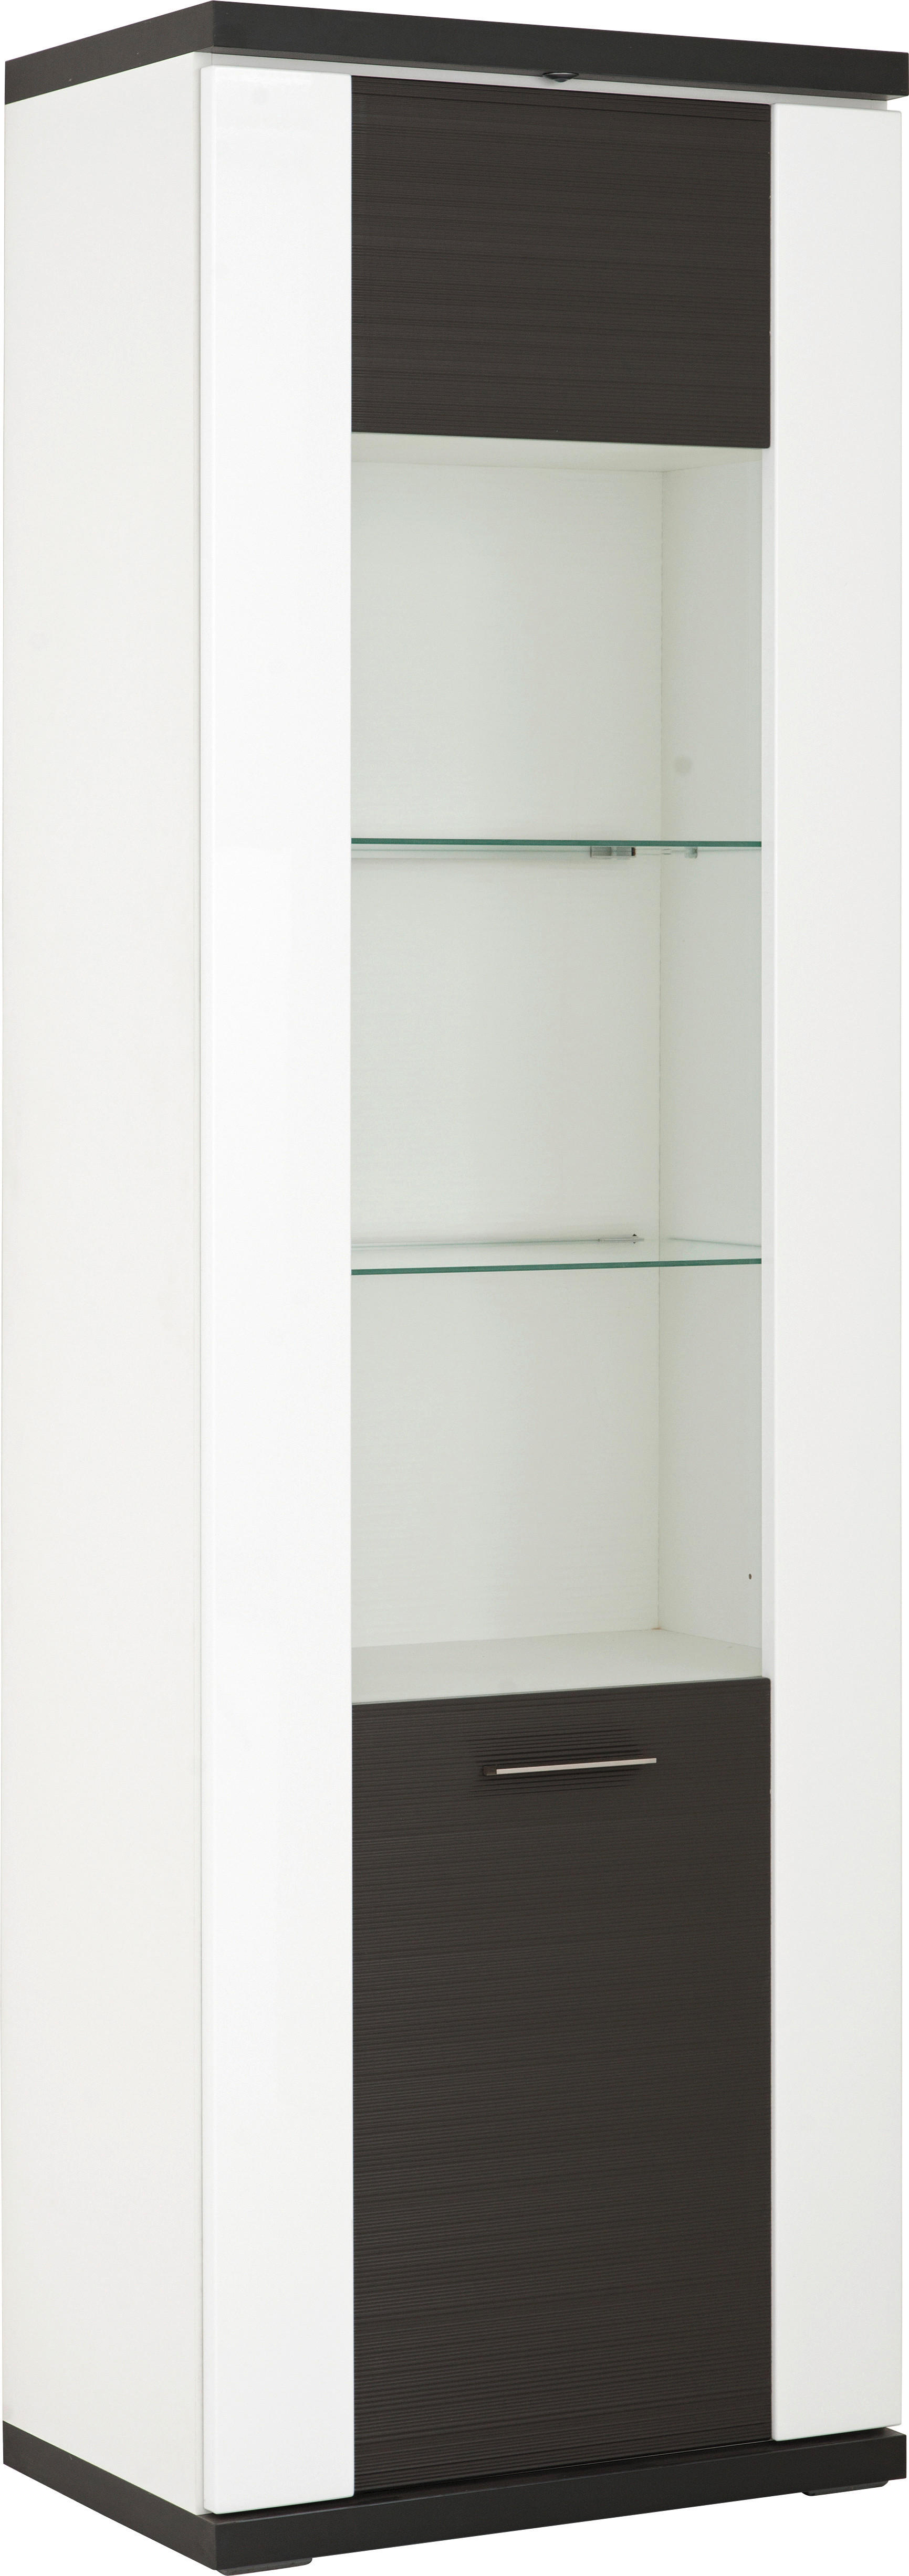 VITRINE in Graphitfarben, Weiß  - Silberfarben/Schwarz, Design, Glas/Kunststoff (65,1/206/41,6cm) - Xora